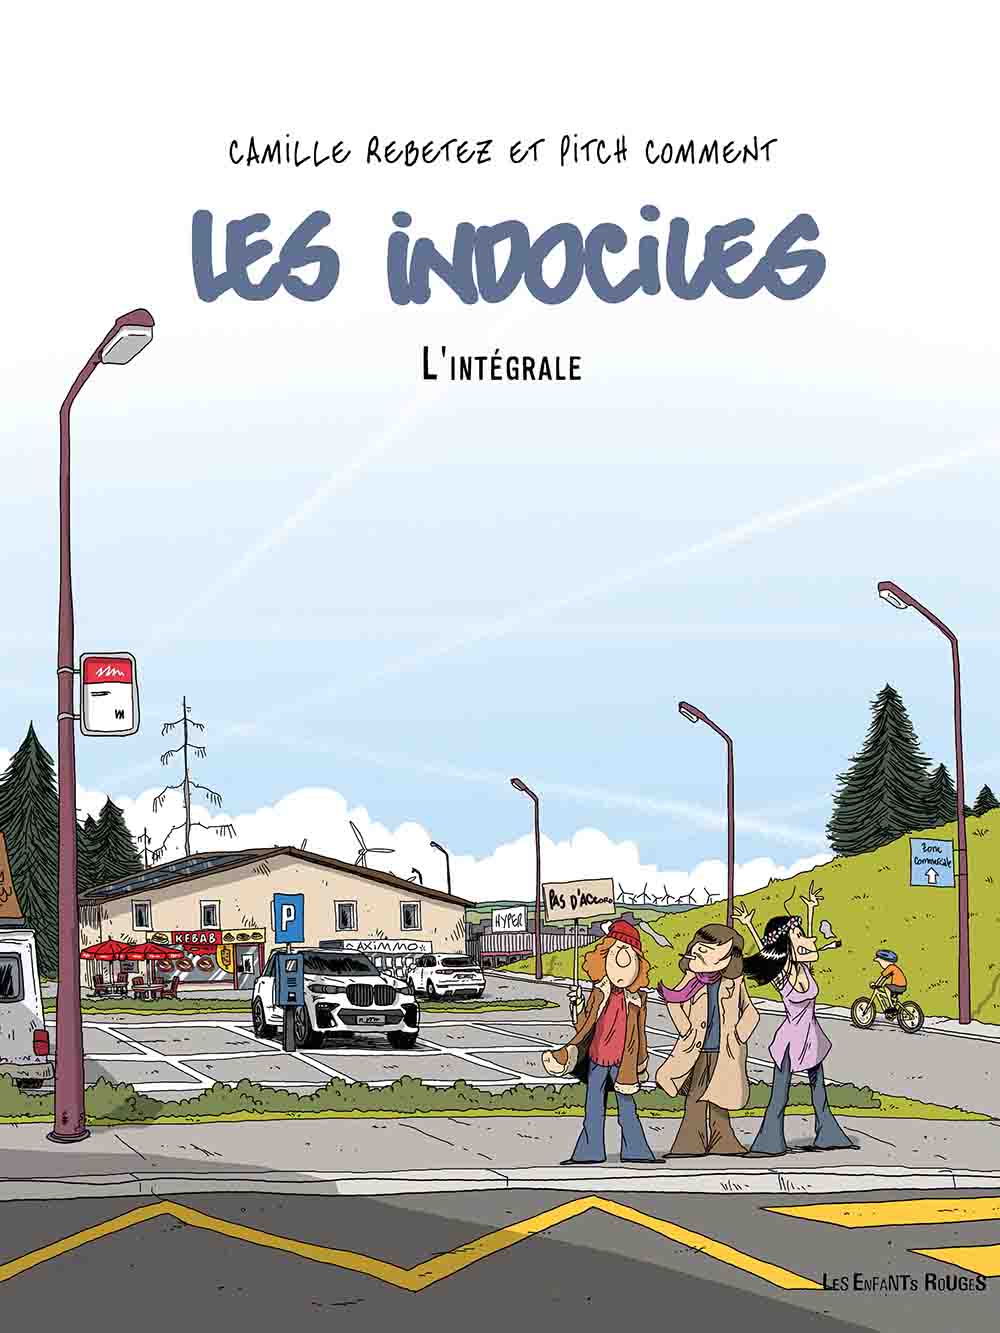 Les Indociles - Camille Rebetez & Pitch Comment